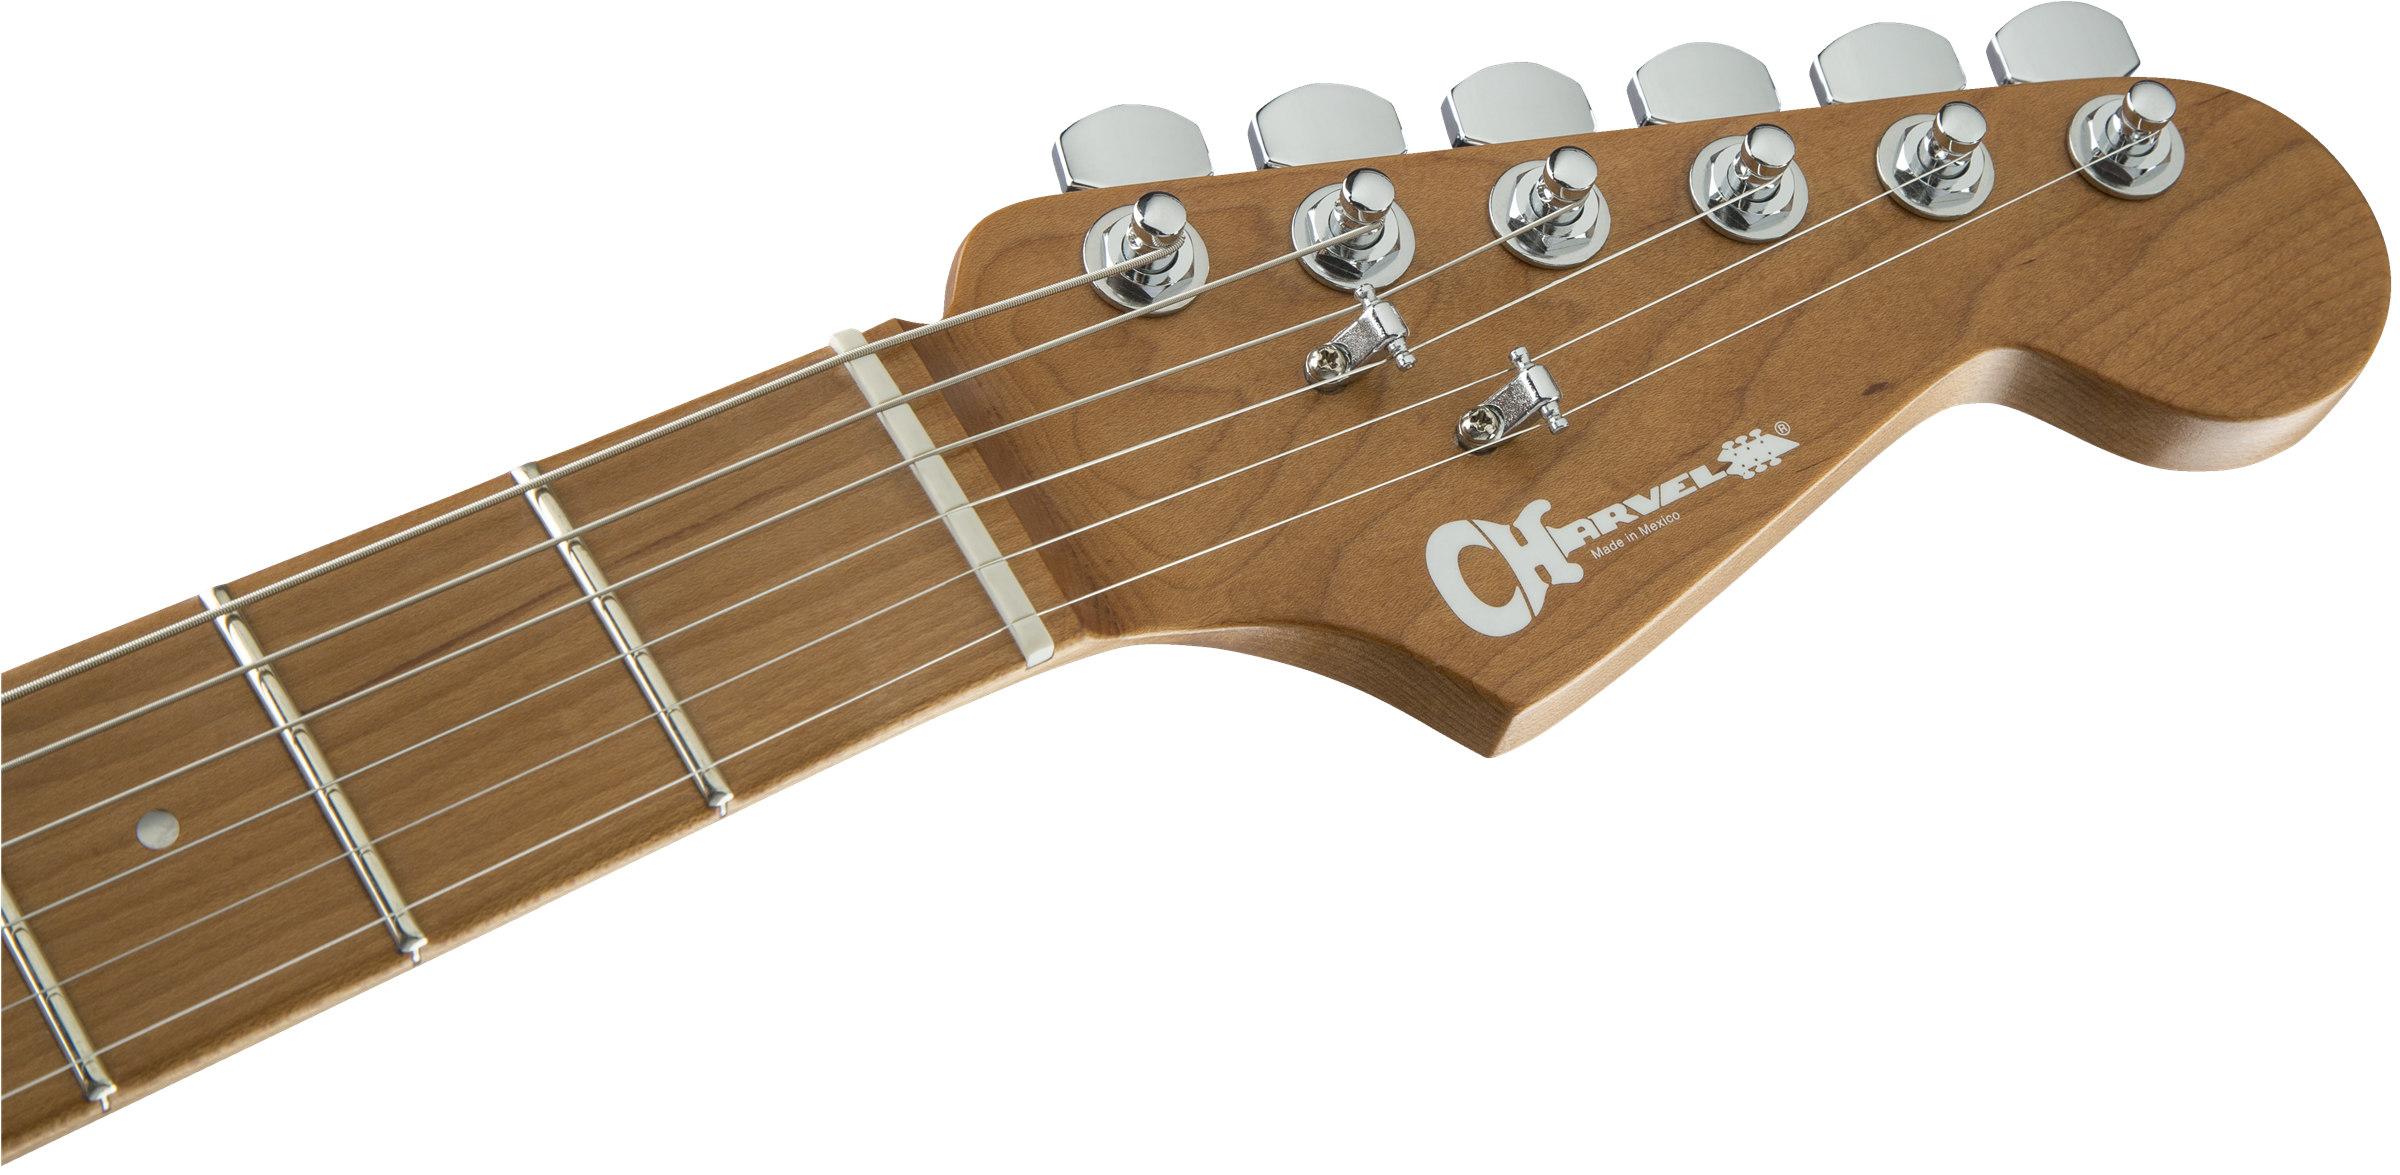 Charvel Pro-mod Dk24 Hss 2pt Cm Trem Mn - Satin Shell Pink - Str shape electric guitar - Variation 4